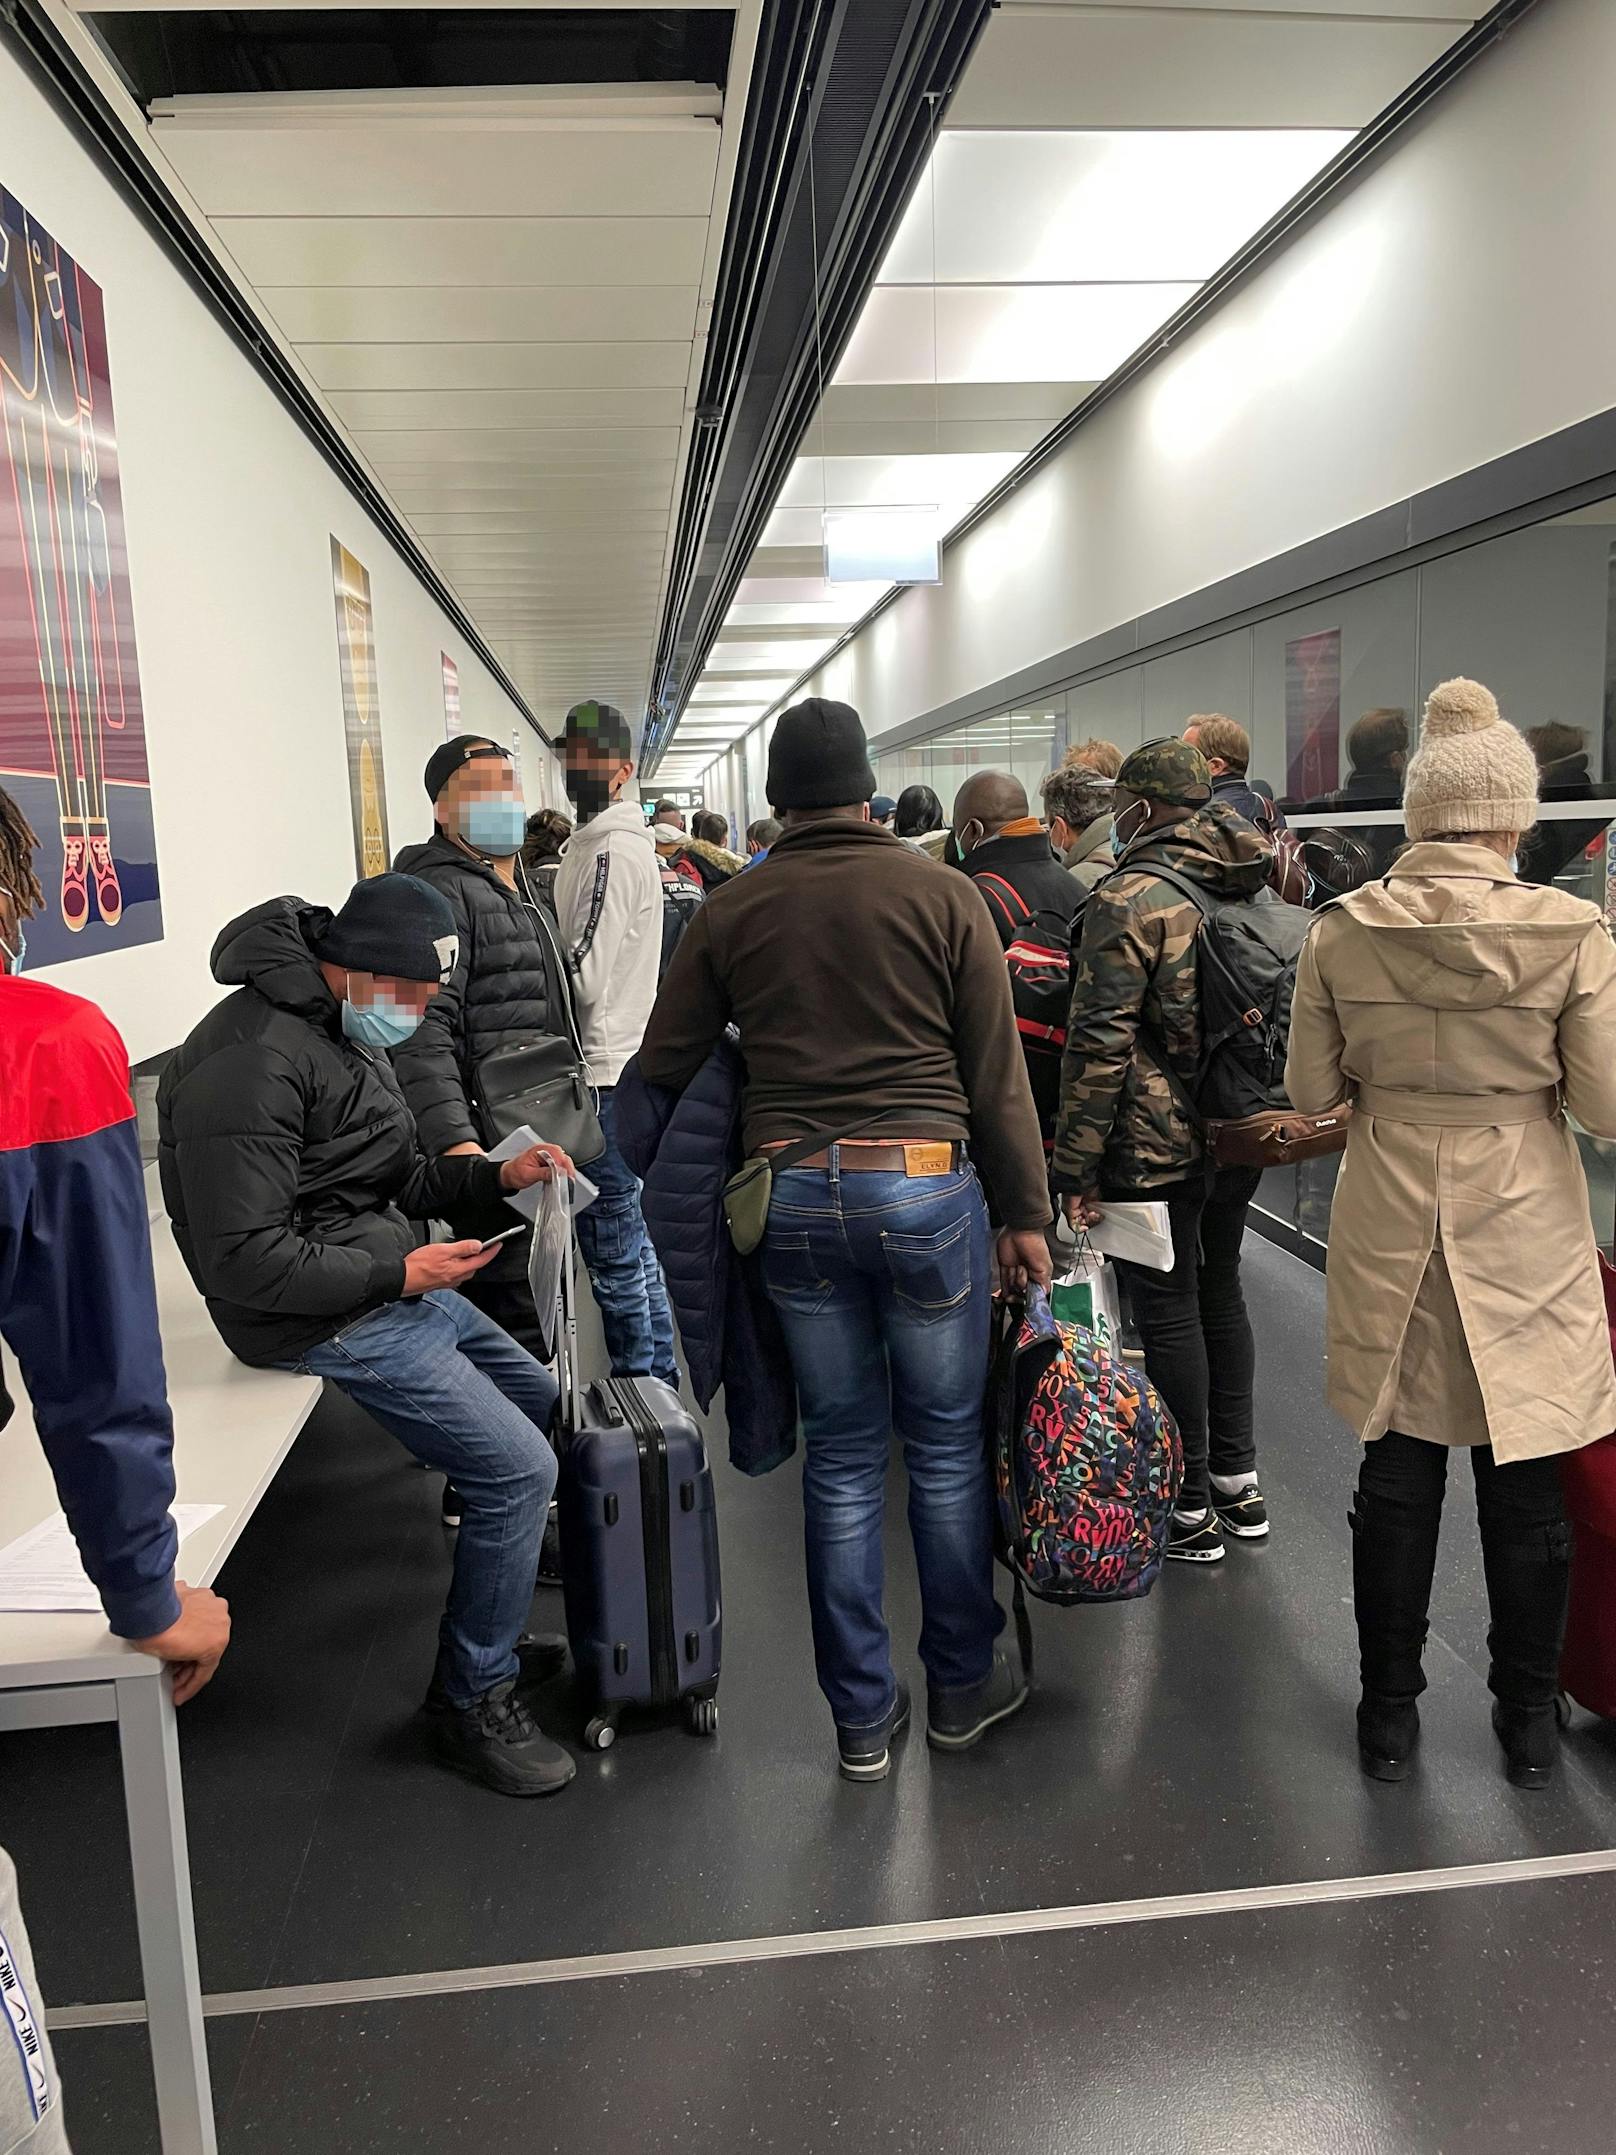 Am Flughafen Wien kam es zu einer Massenansammlung.